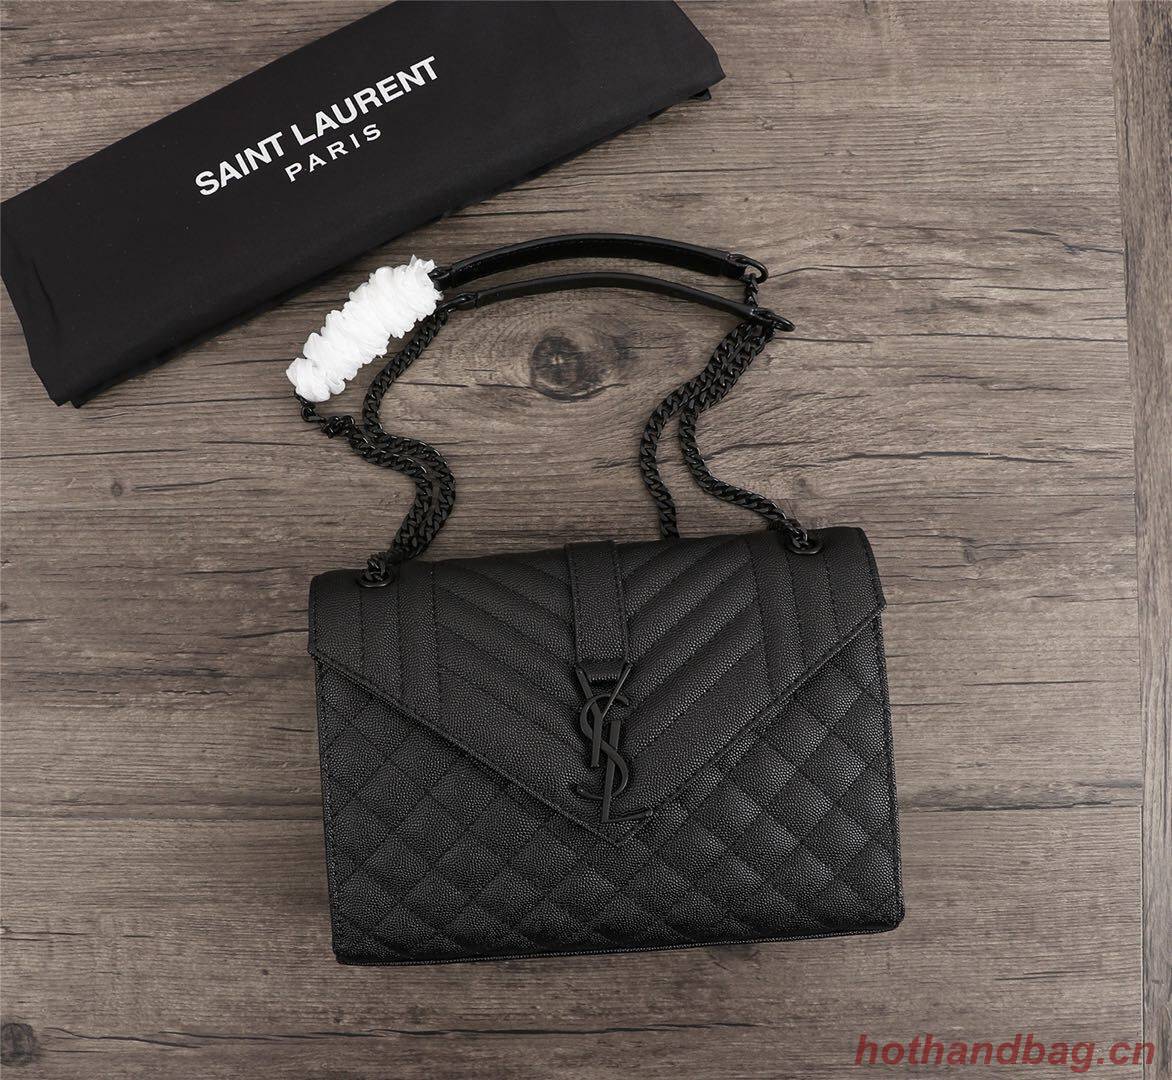 SAINT LAURENT Medium satchel 487206 black